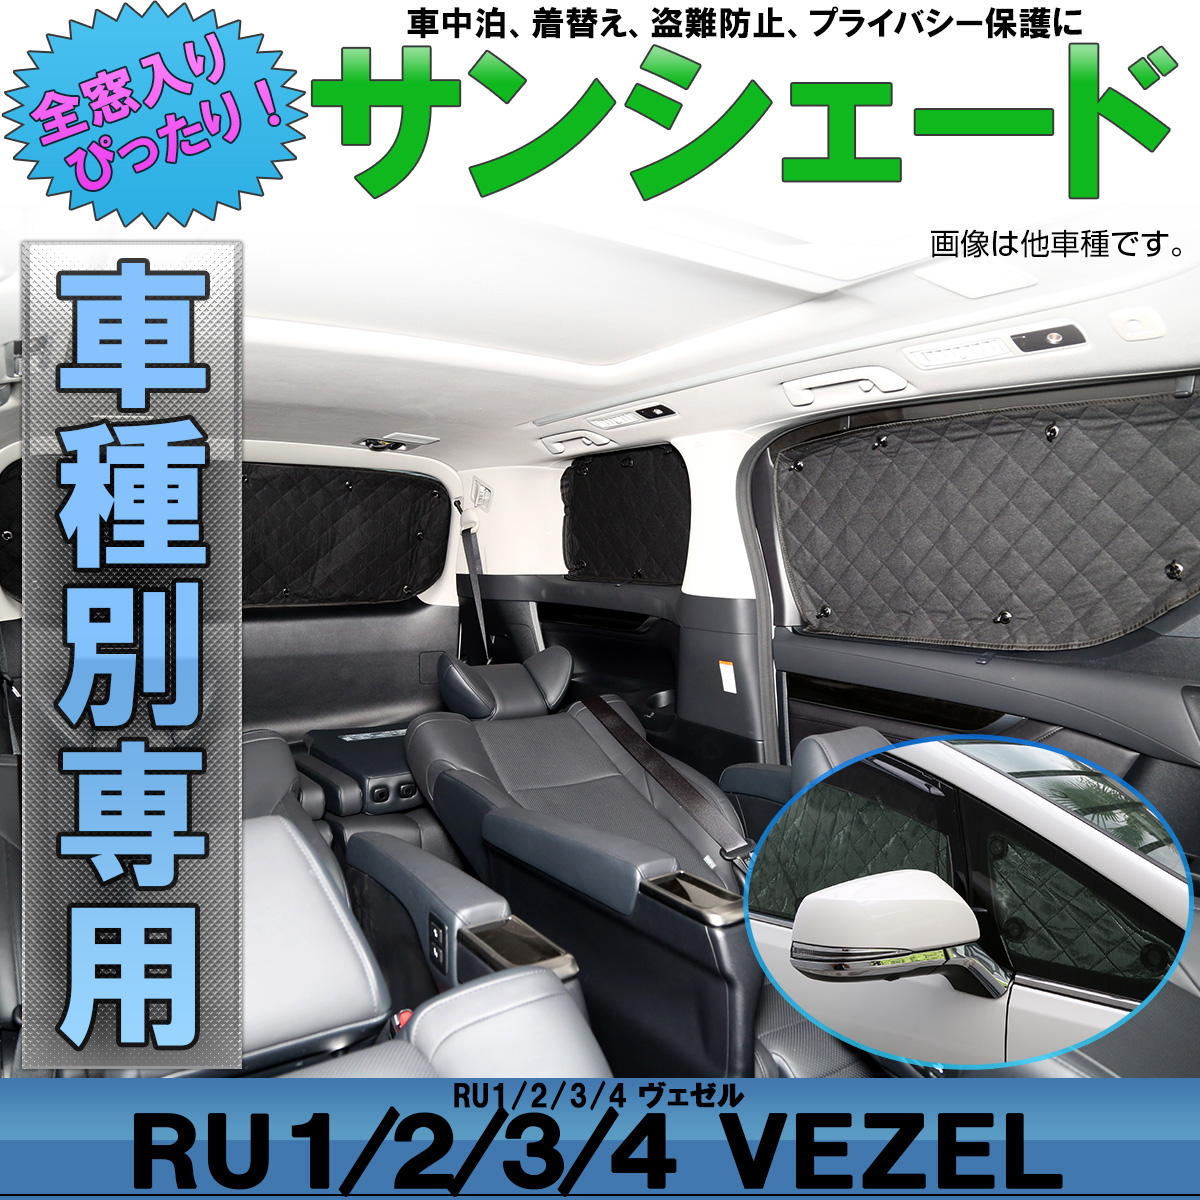 ホンダ Ru1 4 ヴェゼル 専用 サンシェード 全窓セット 5層 ブラックメッシュ 車中泊 アウトドア S 811